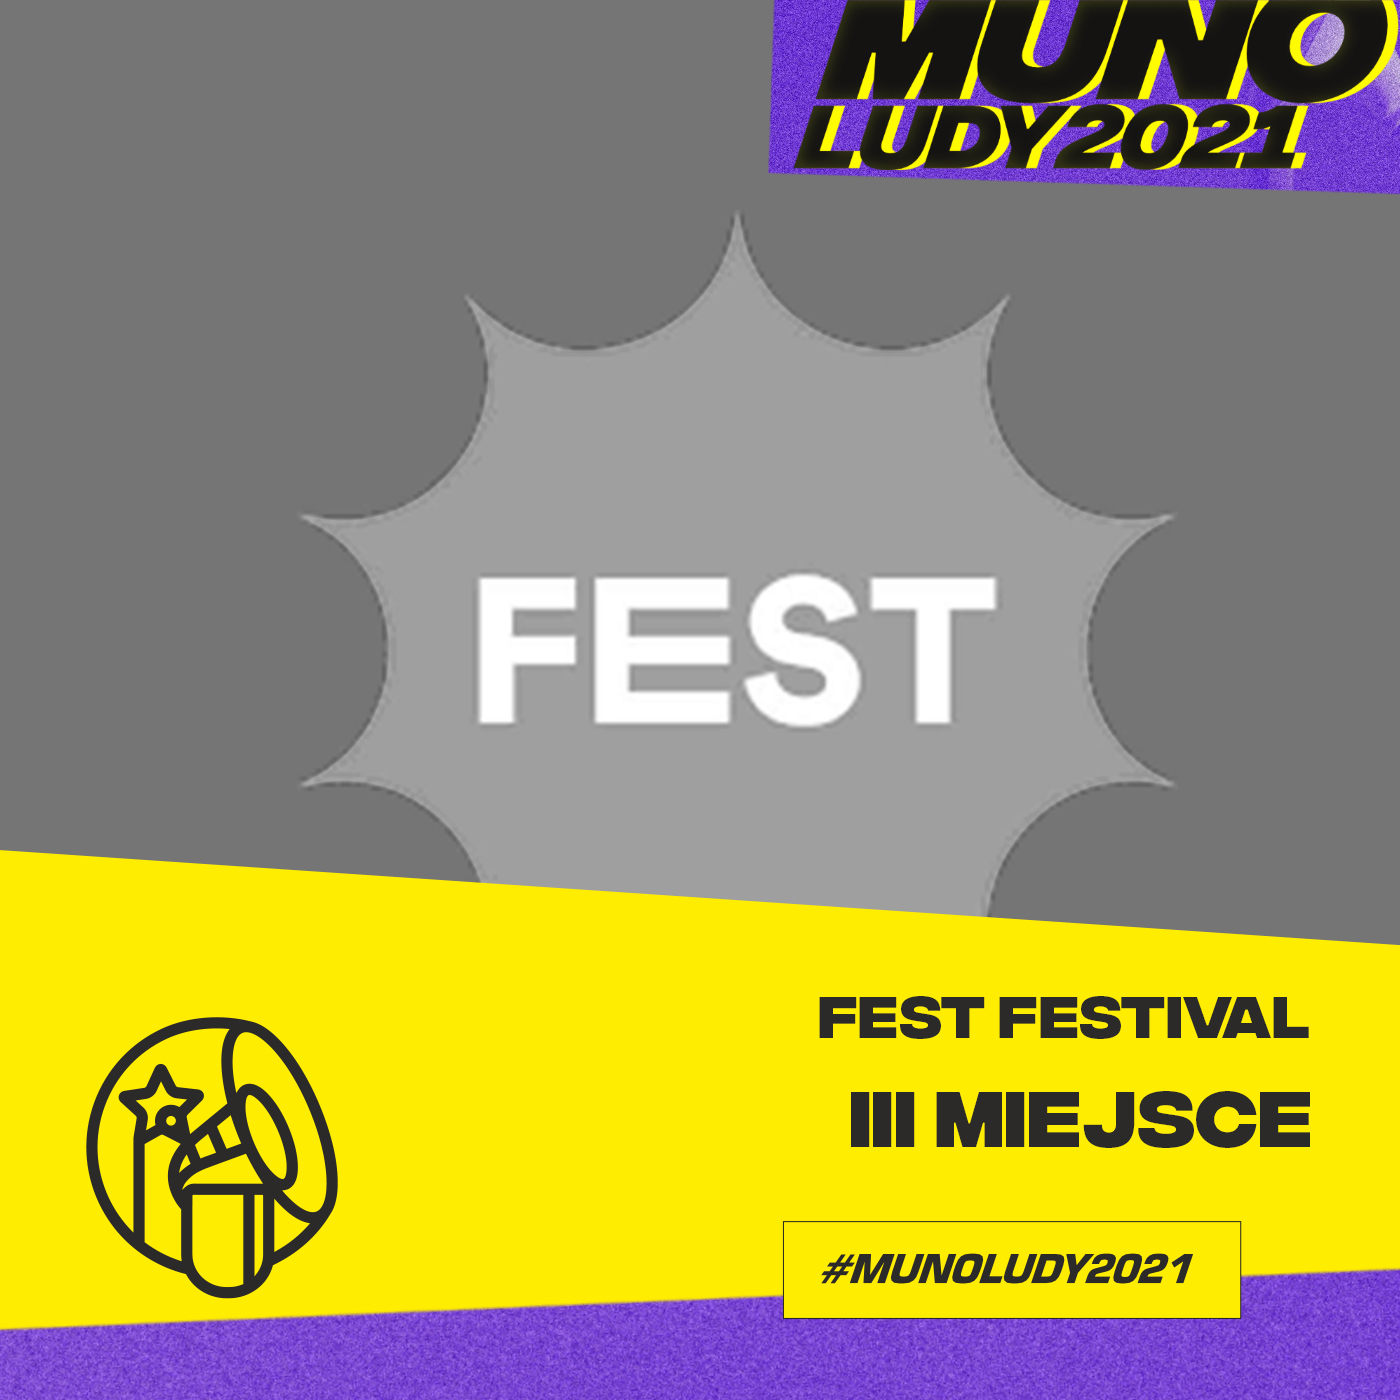 Munoludy, Munoludy 2021, Festiwal Roku